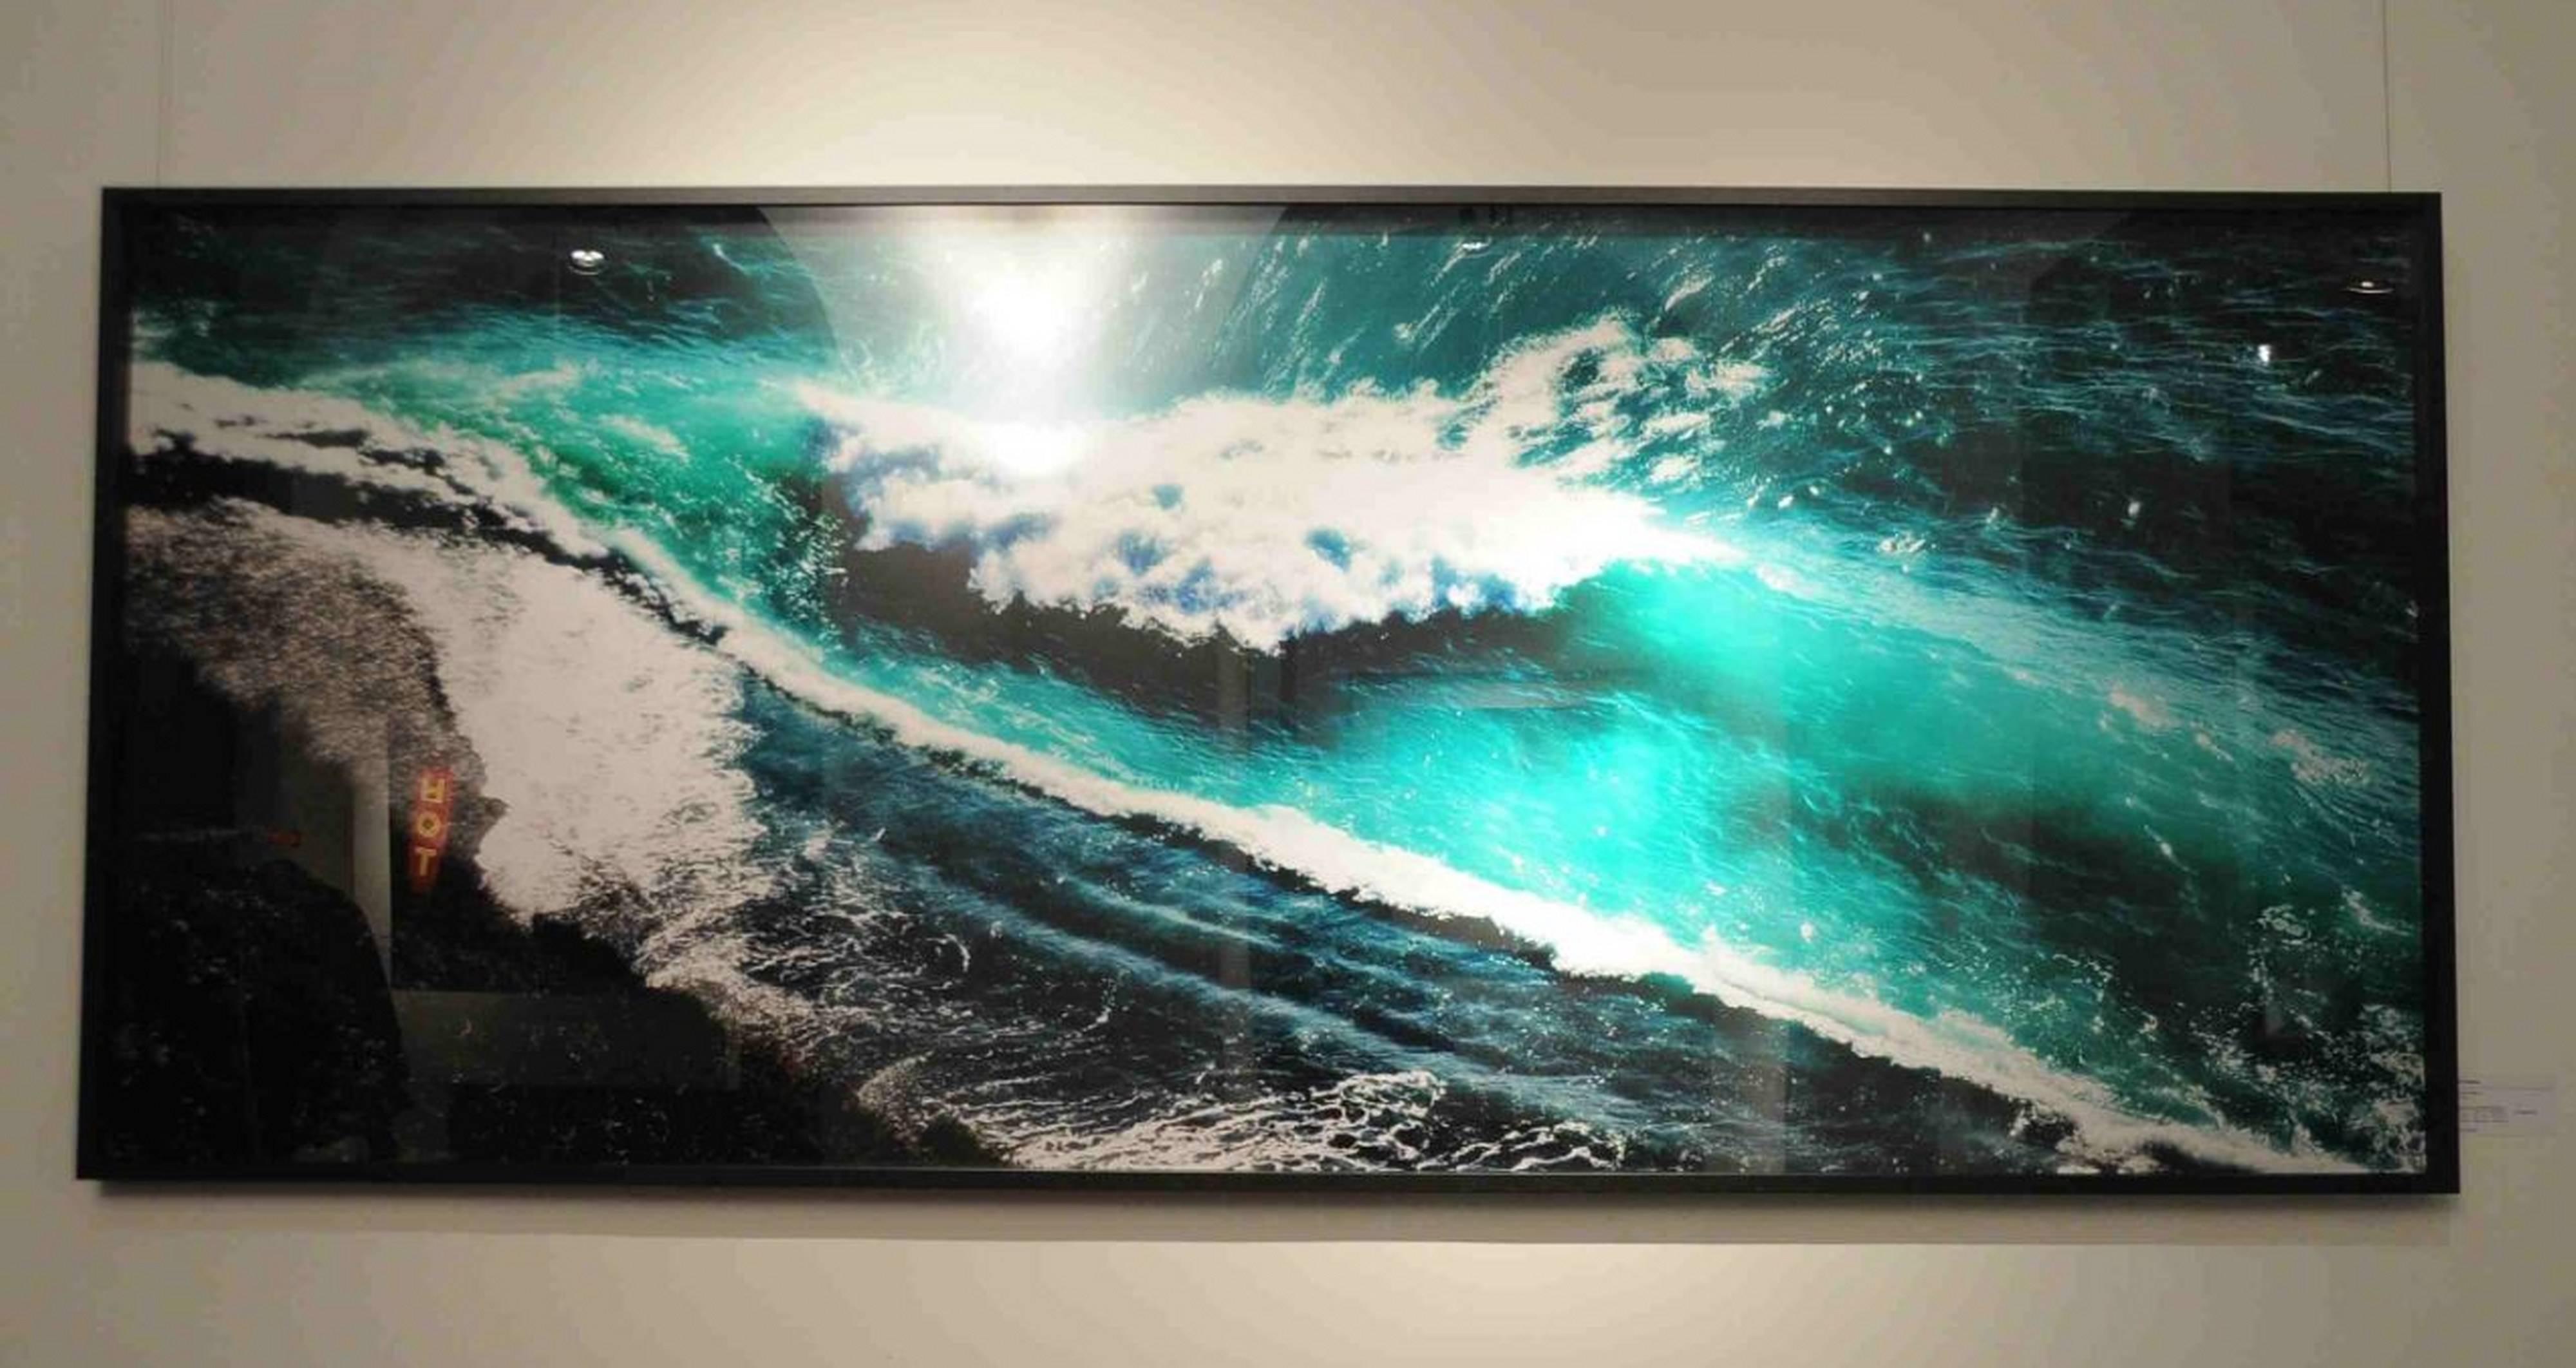 Crashing Waves - Photograph by David Drebin